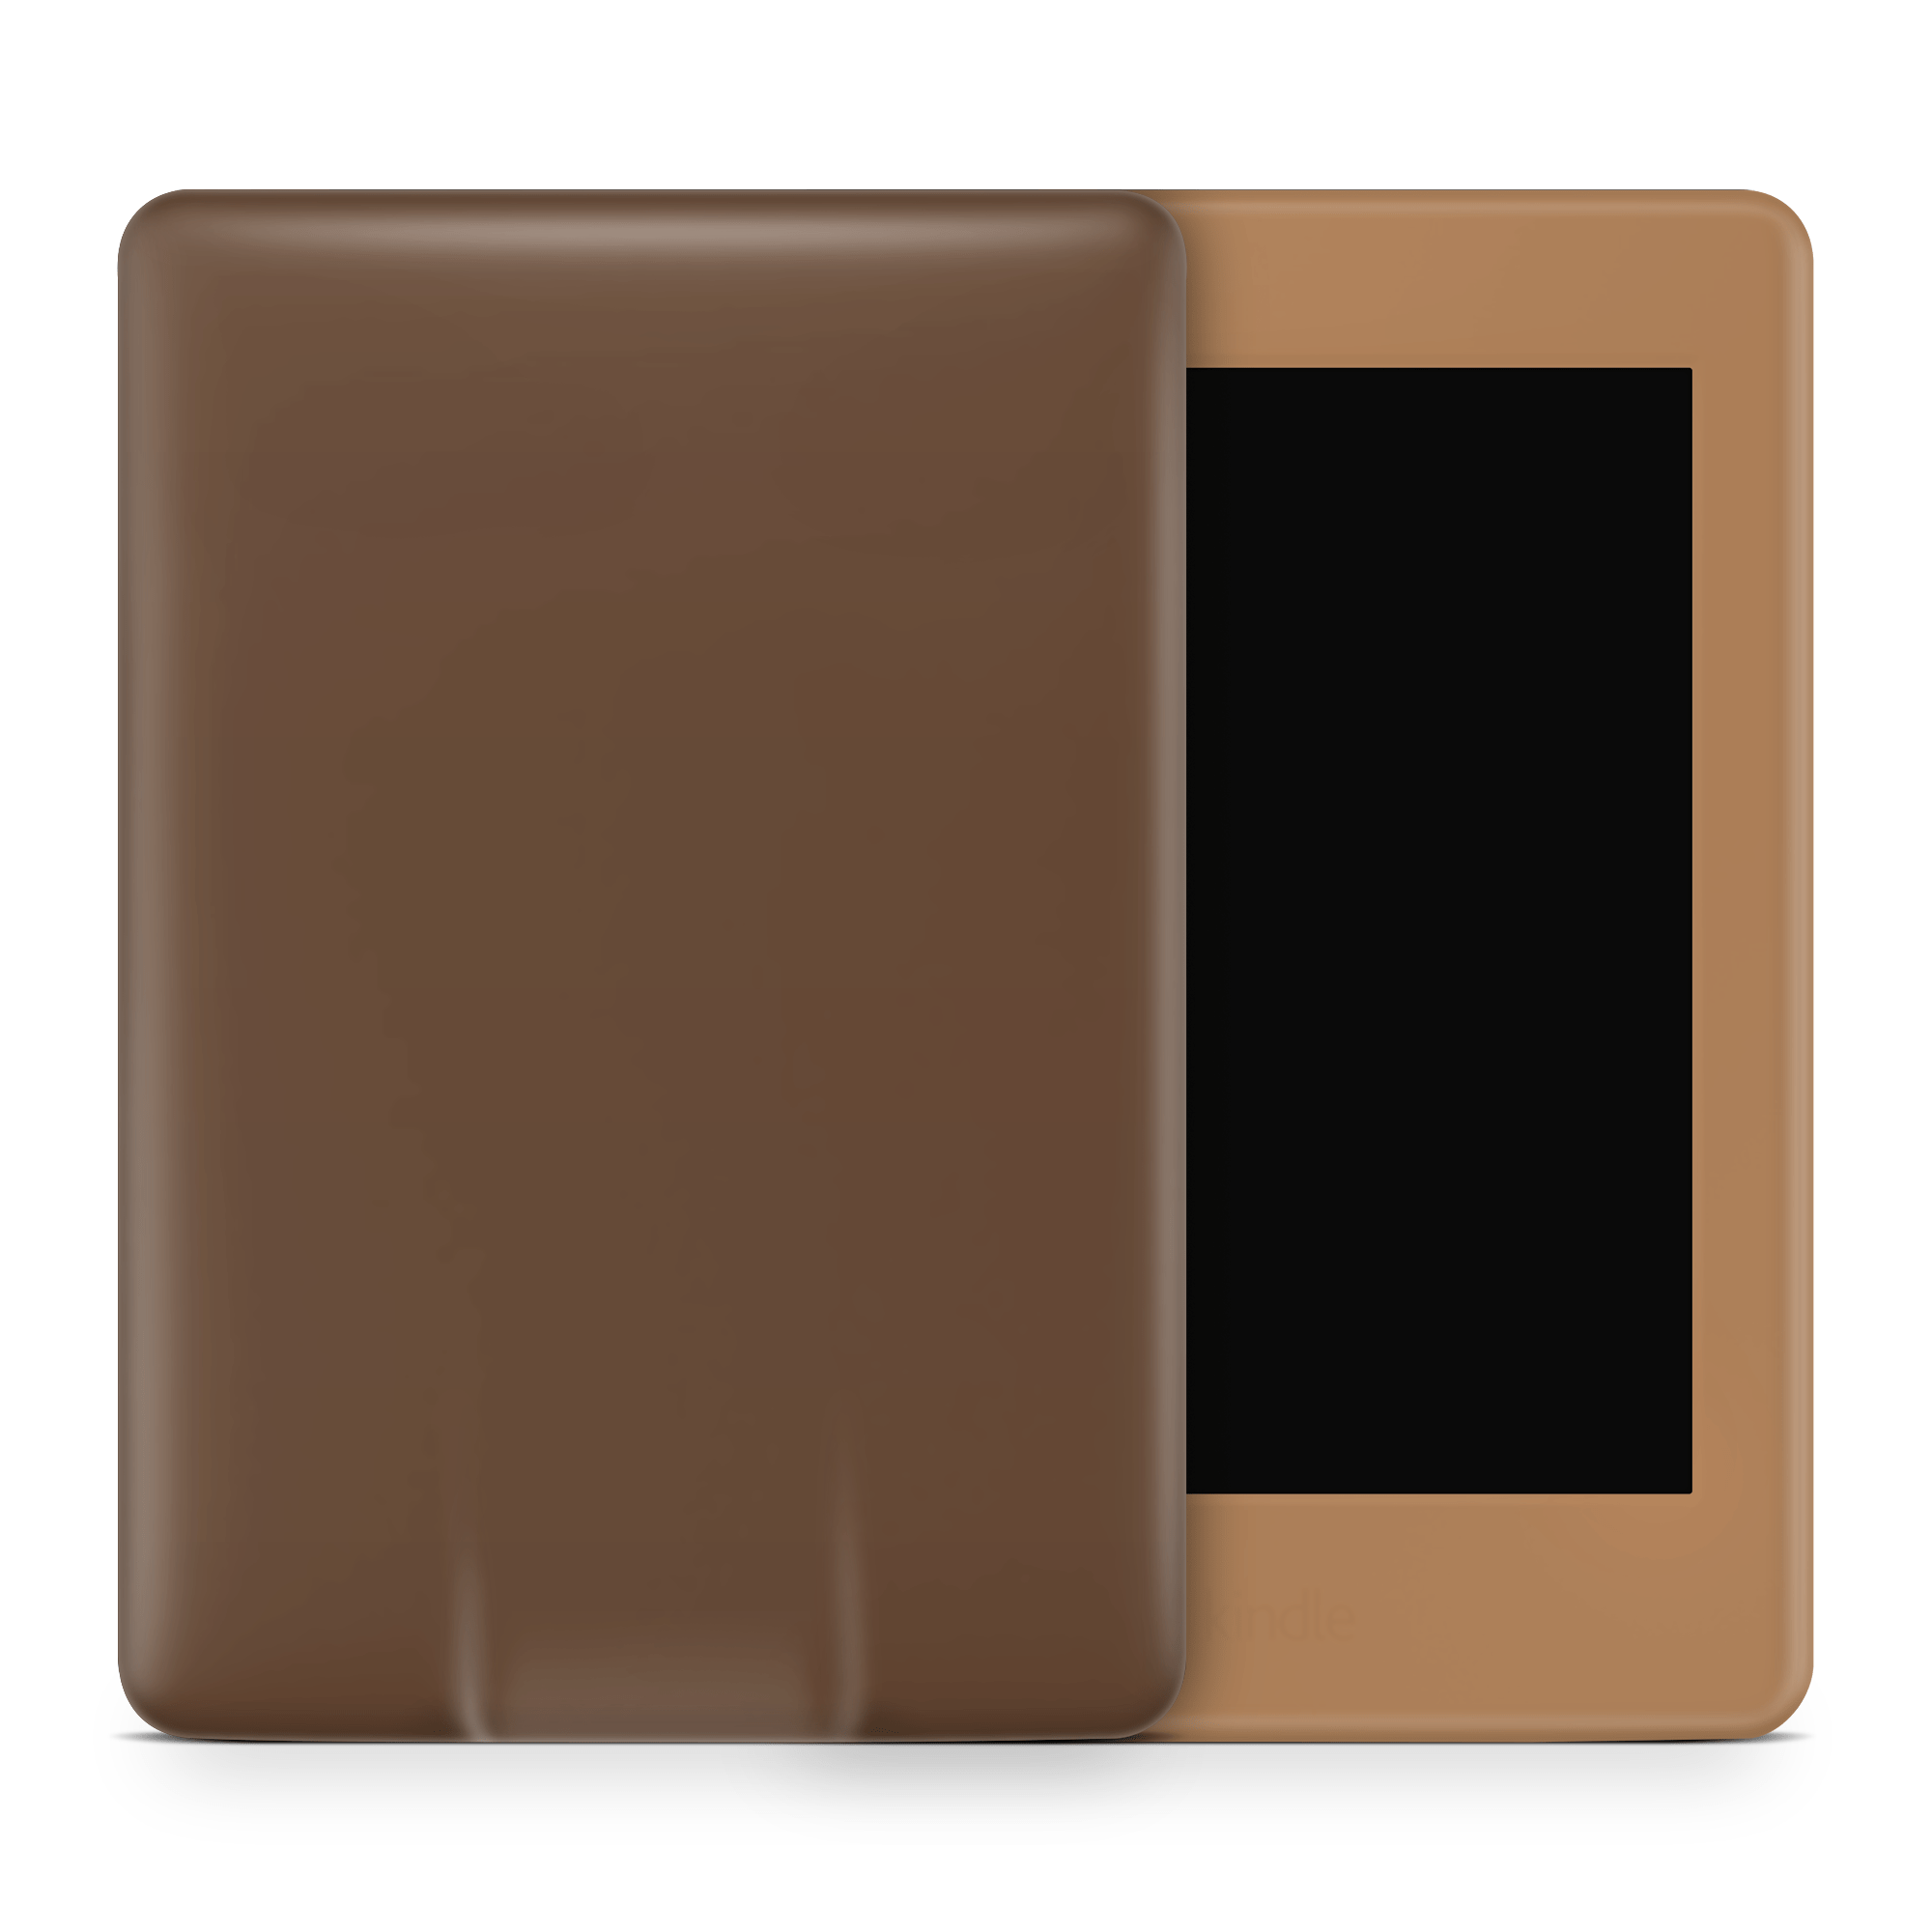 Assorted Chocolates Amazon Kindle Skins